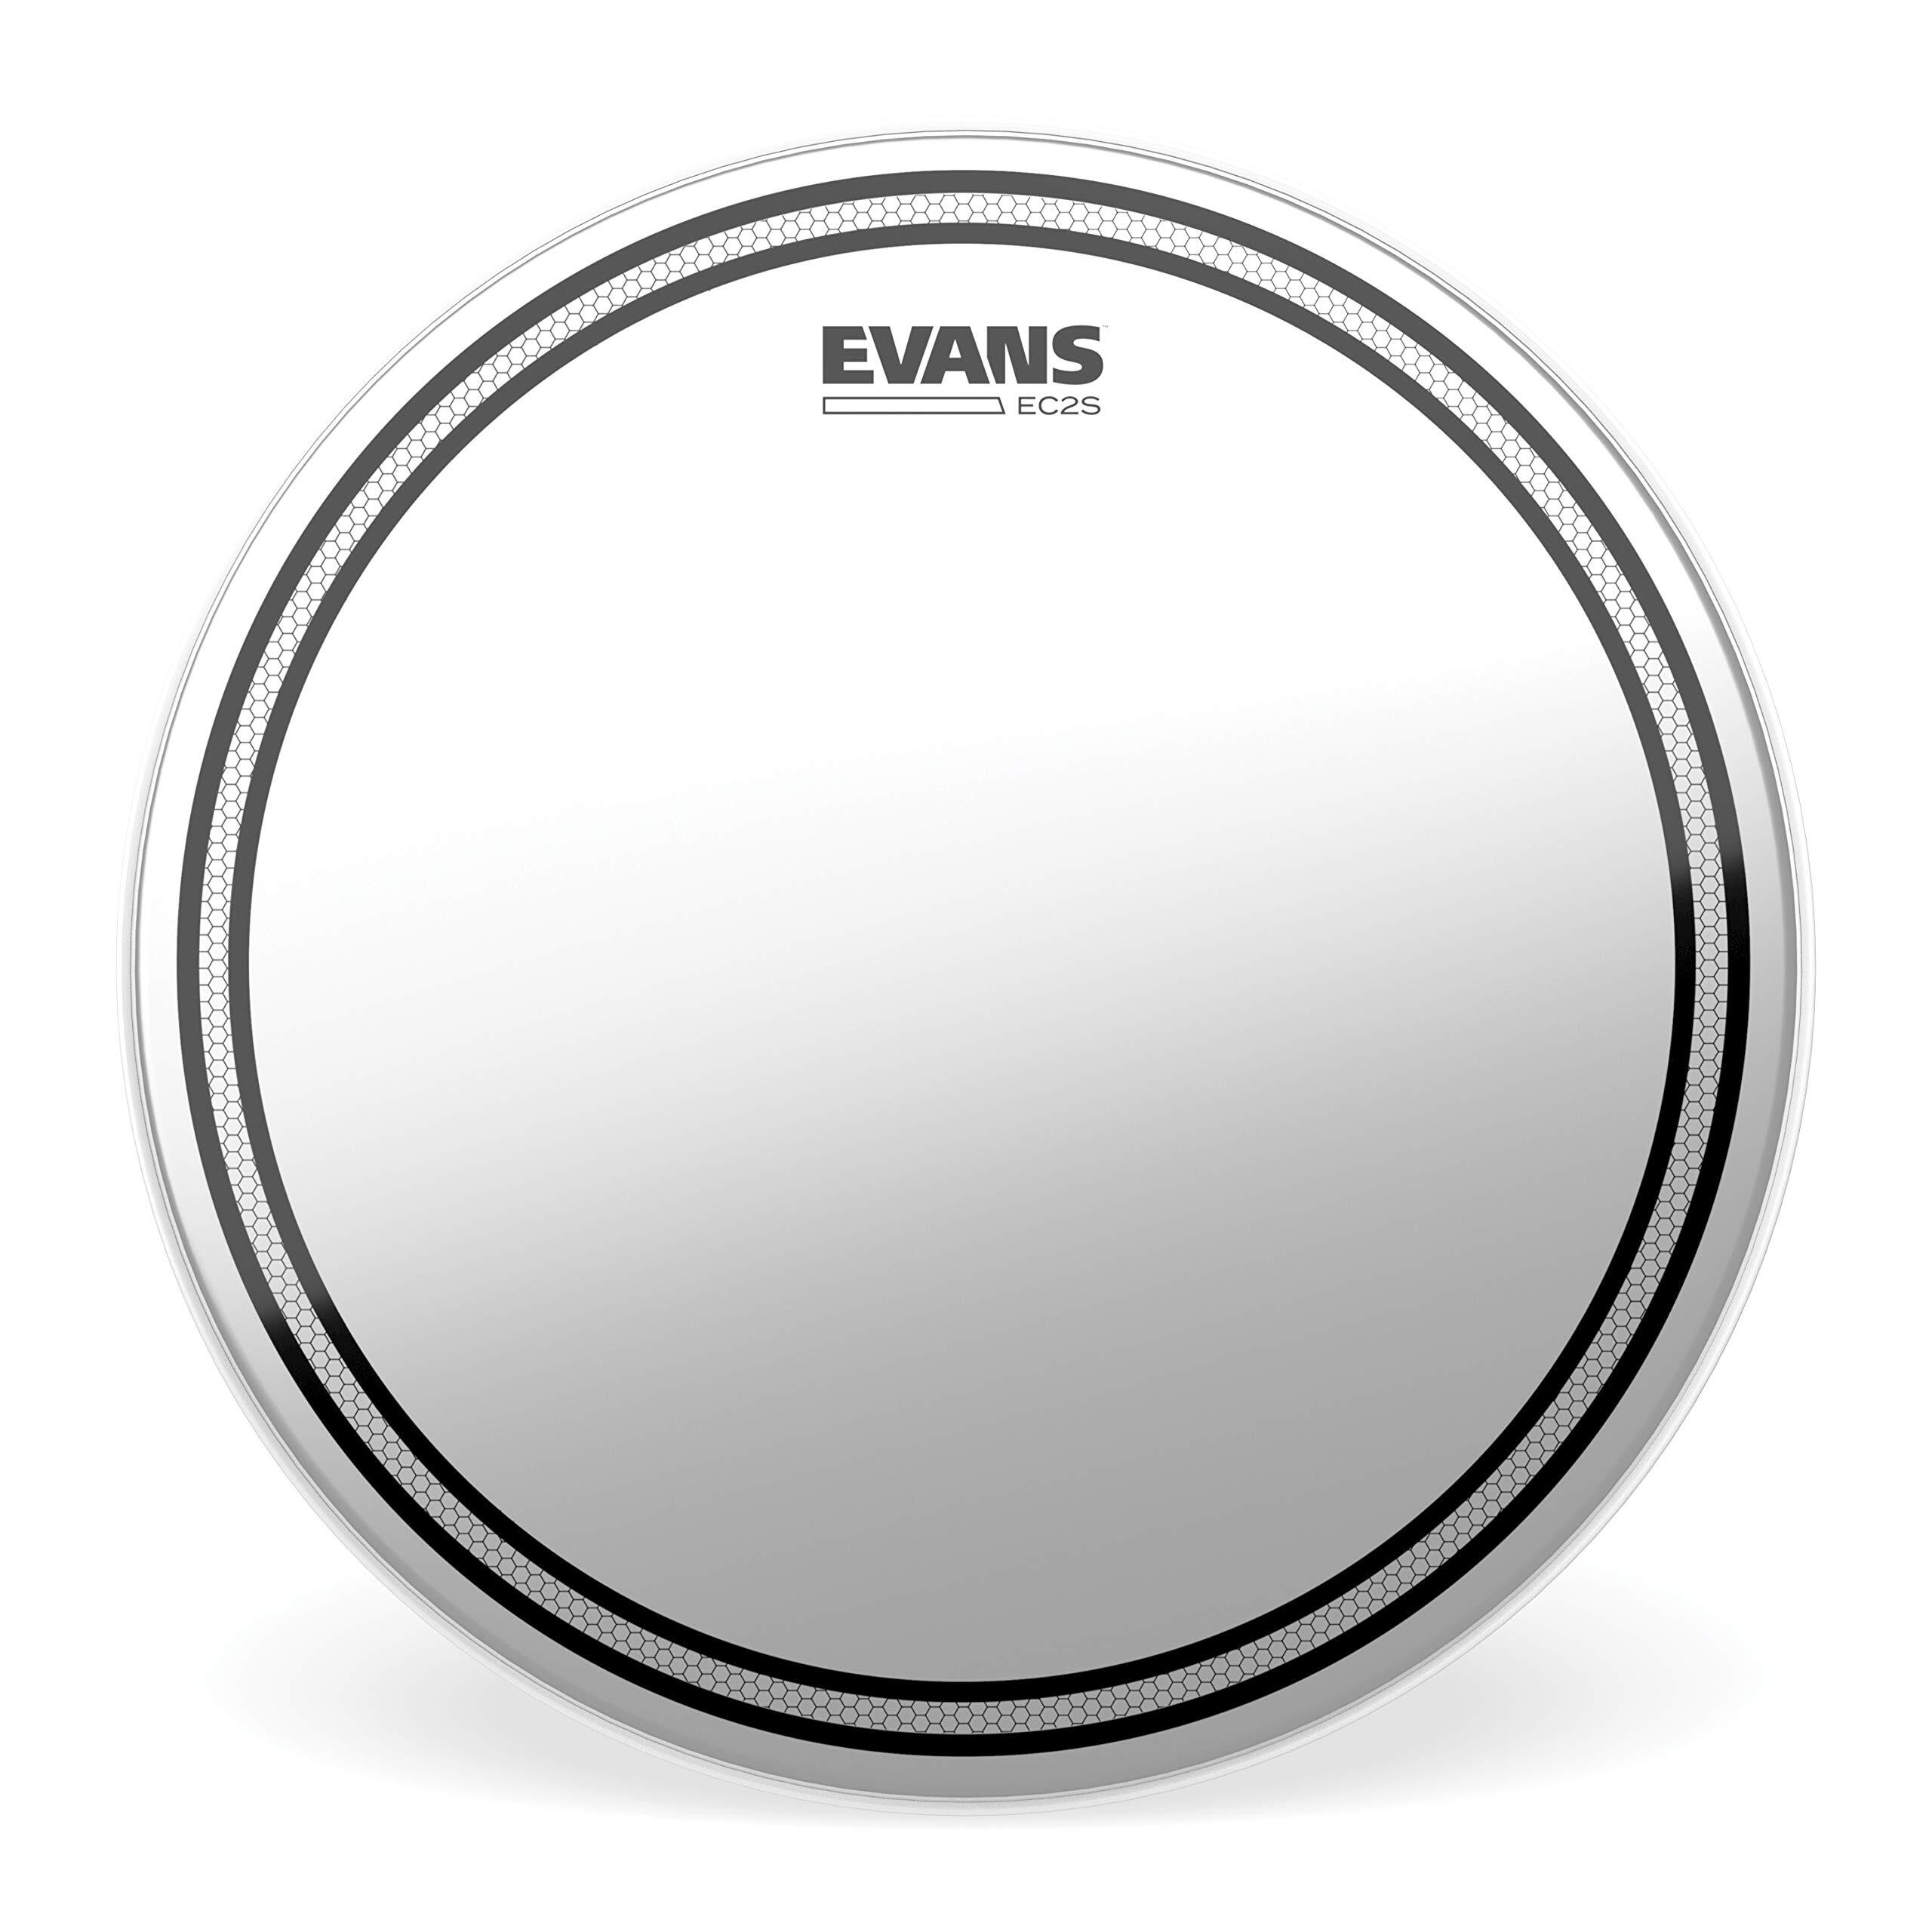 Evans B06EC2S EC2S Coated